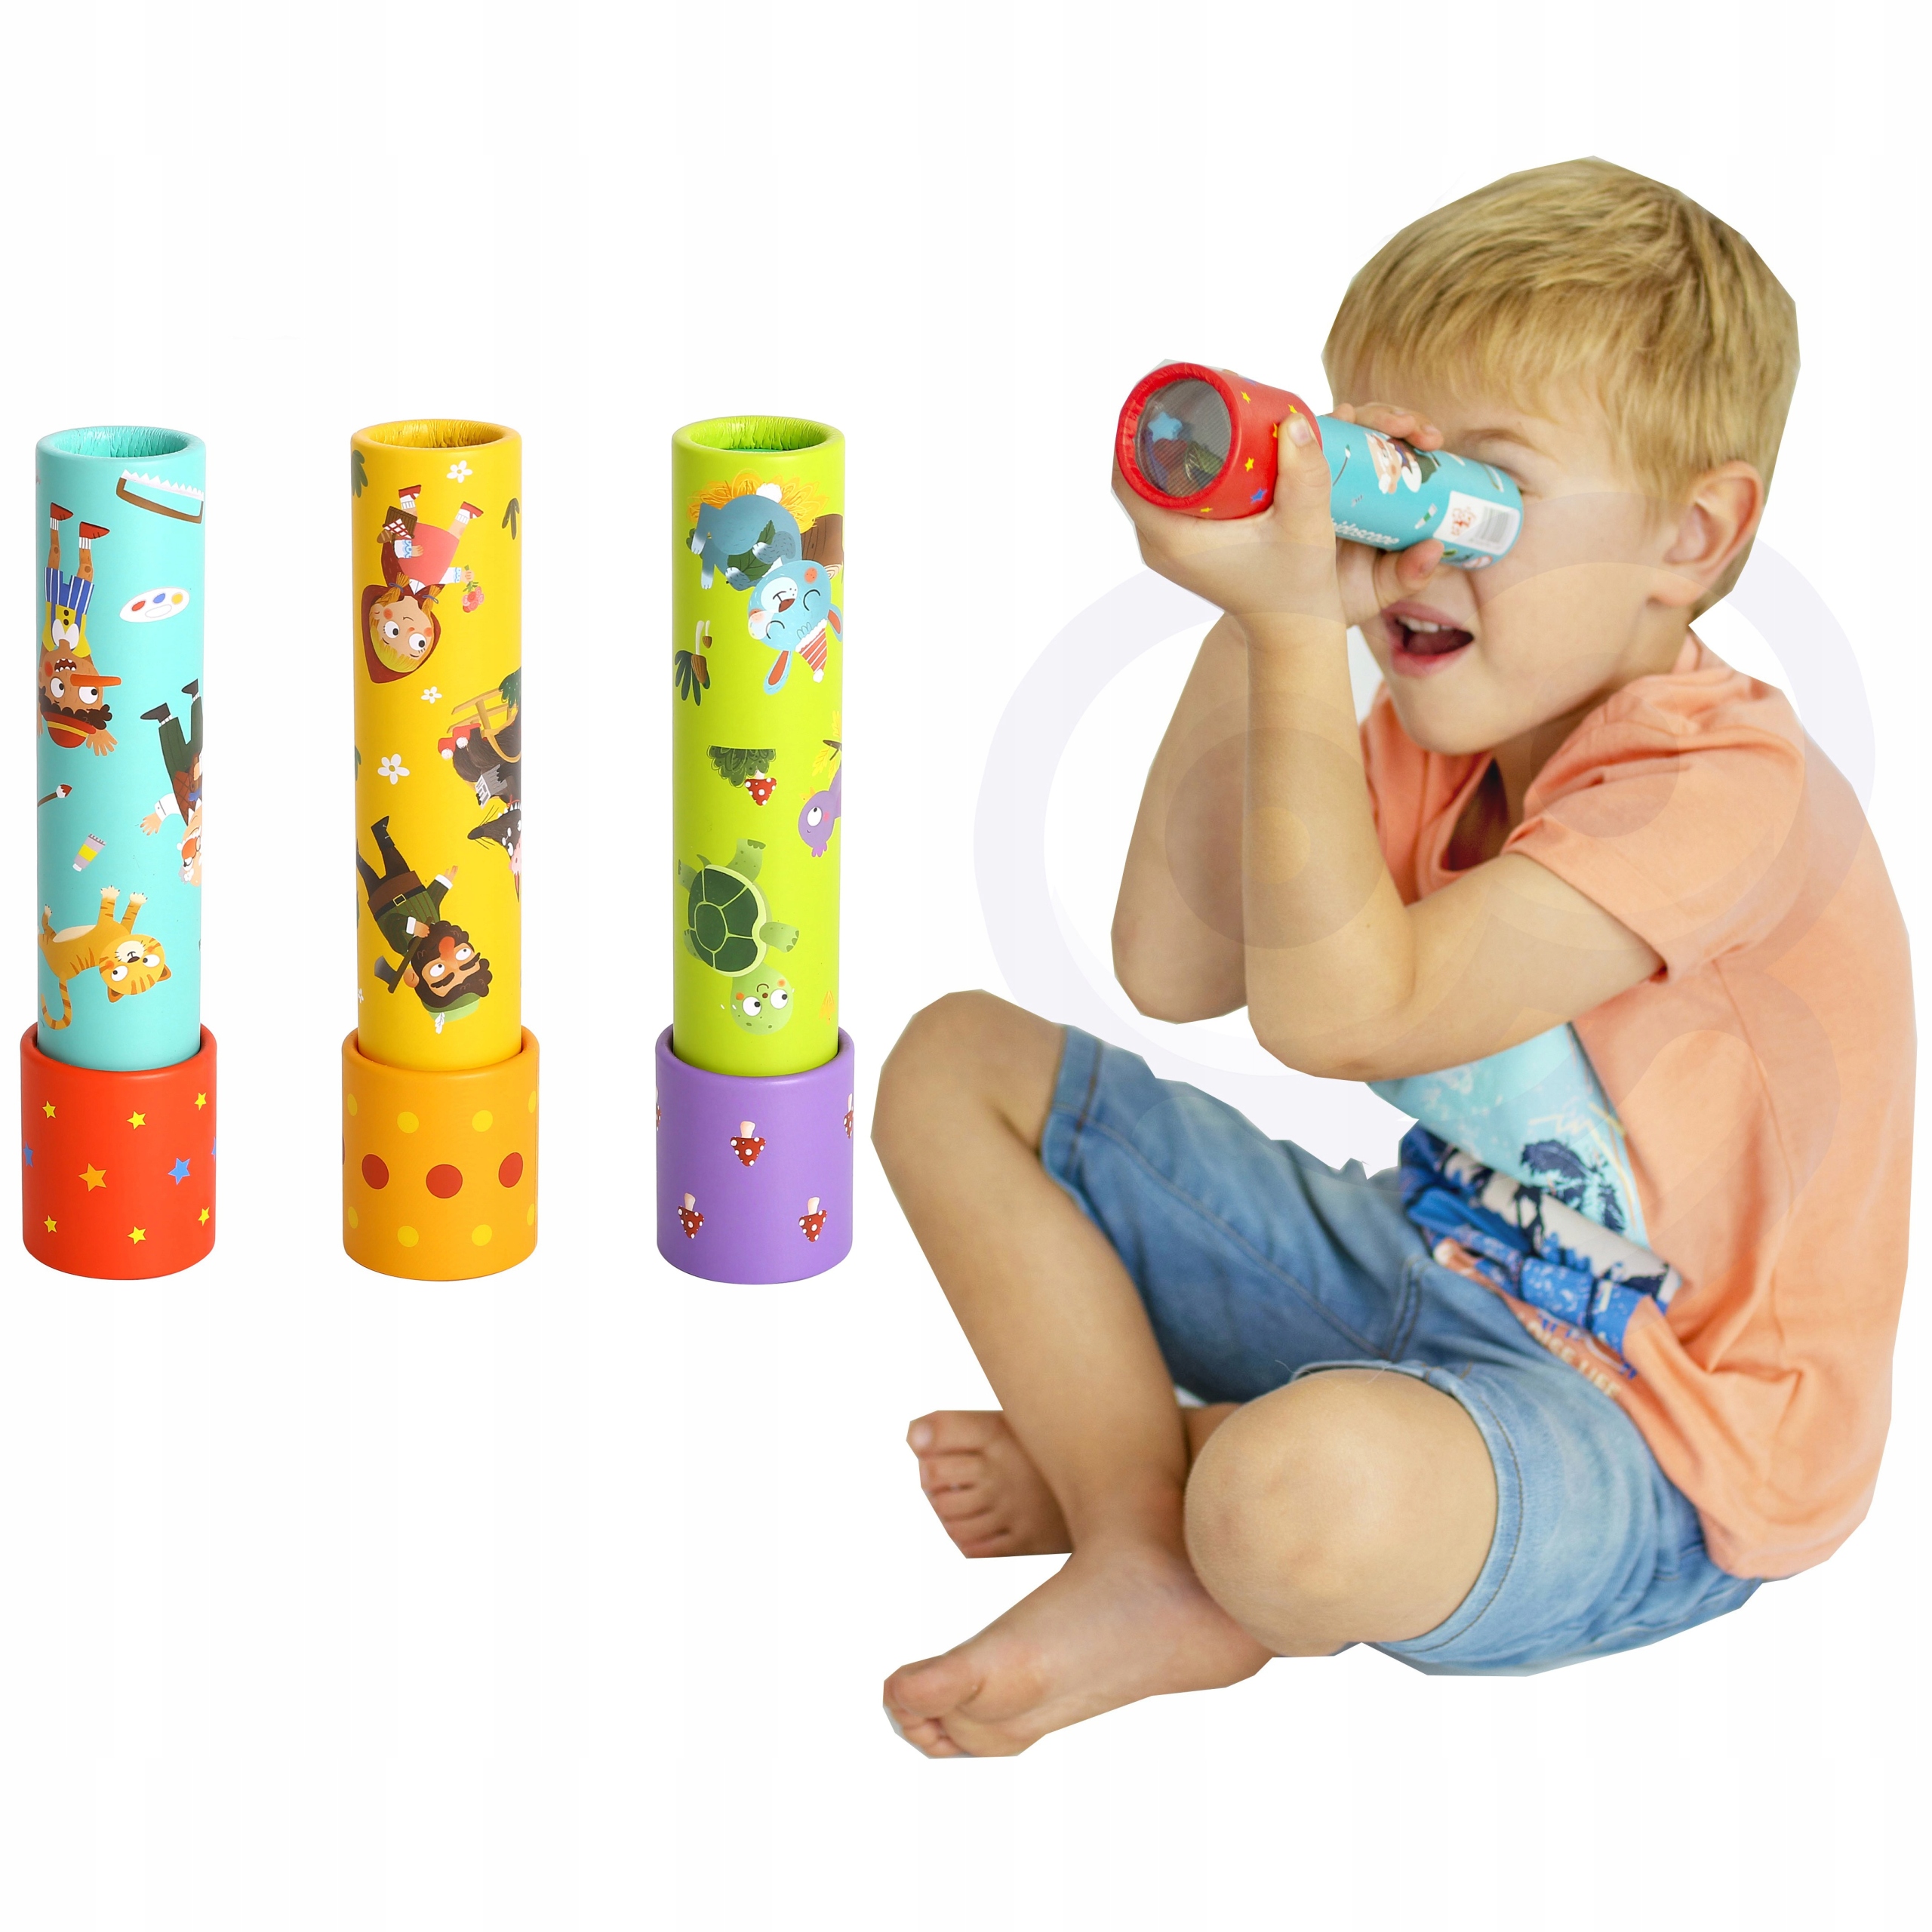 Kalejdoskop Zabawka Edukacyjna 3 Wzory / Tooky Toy